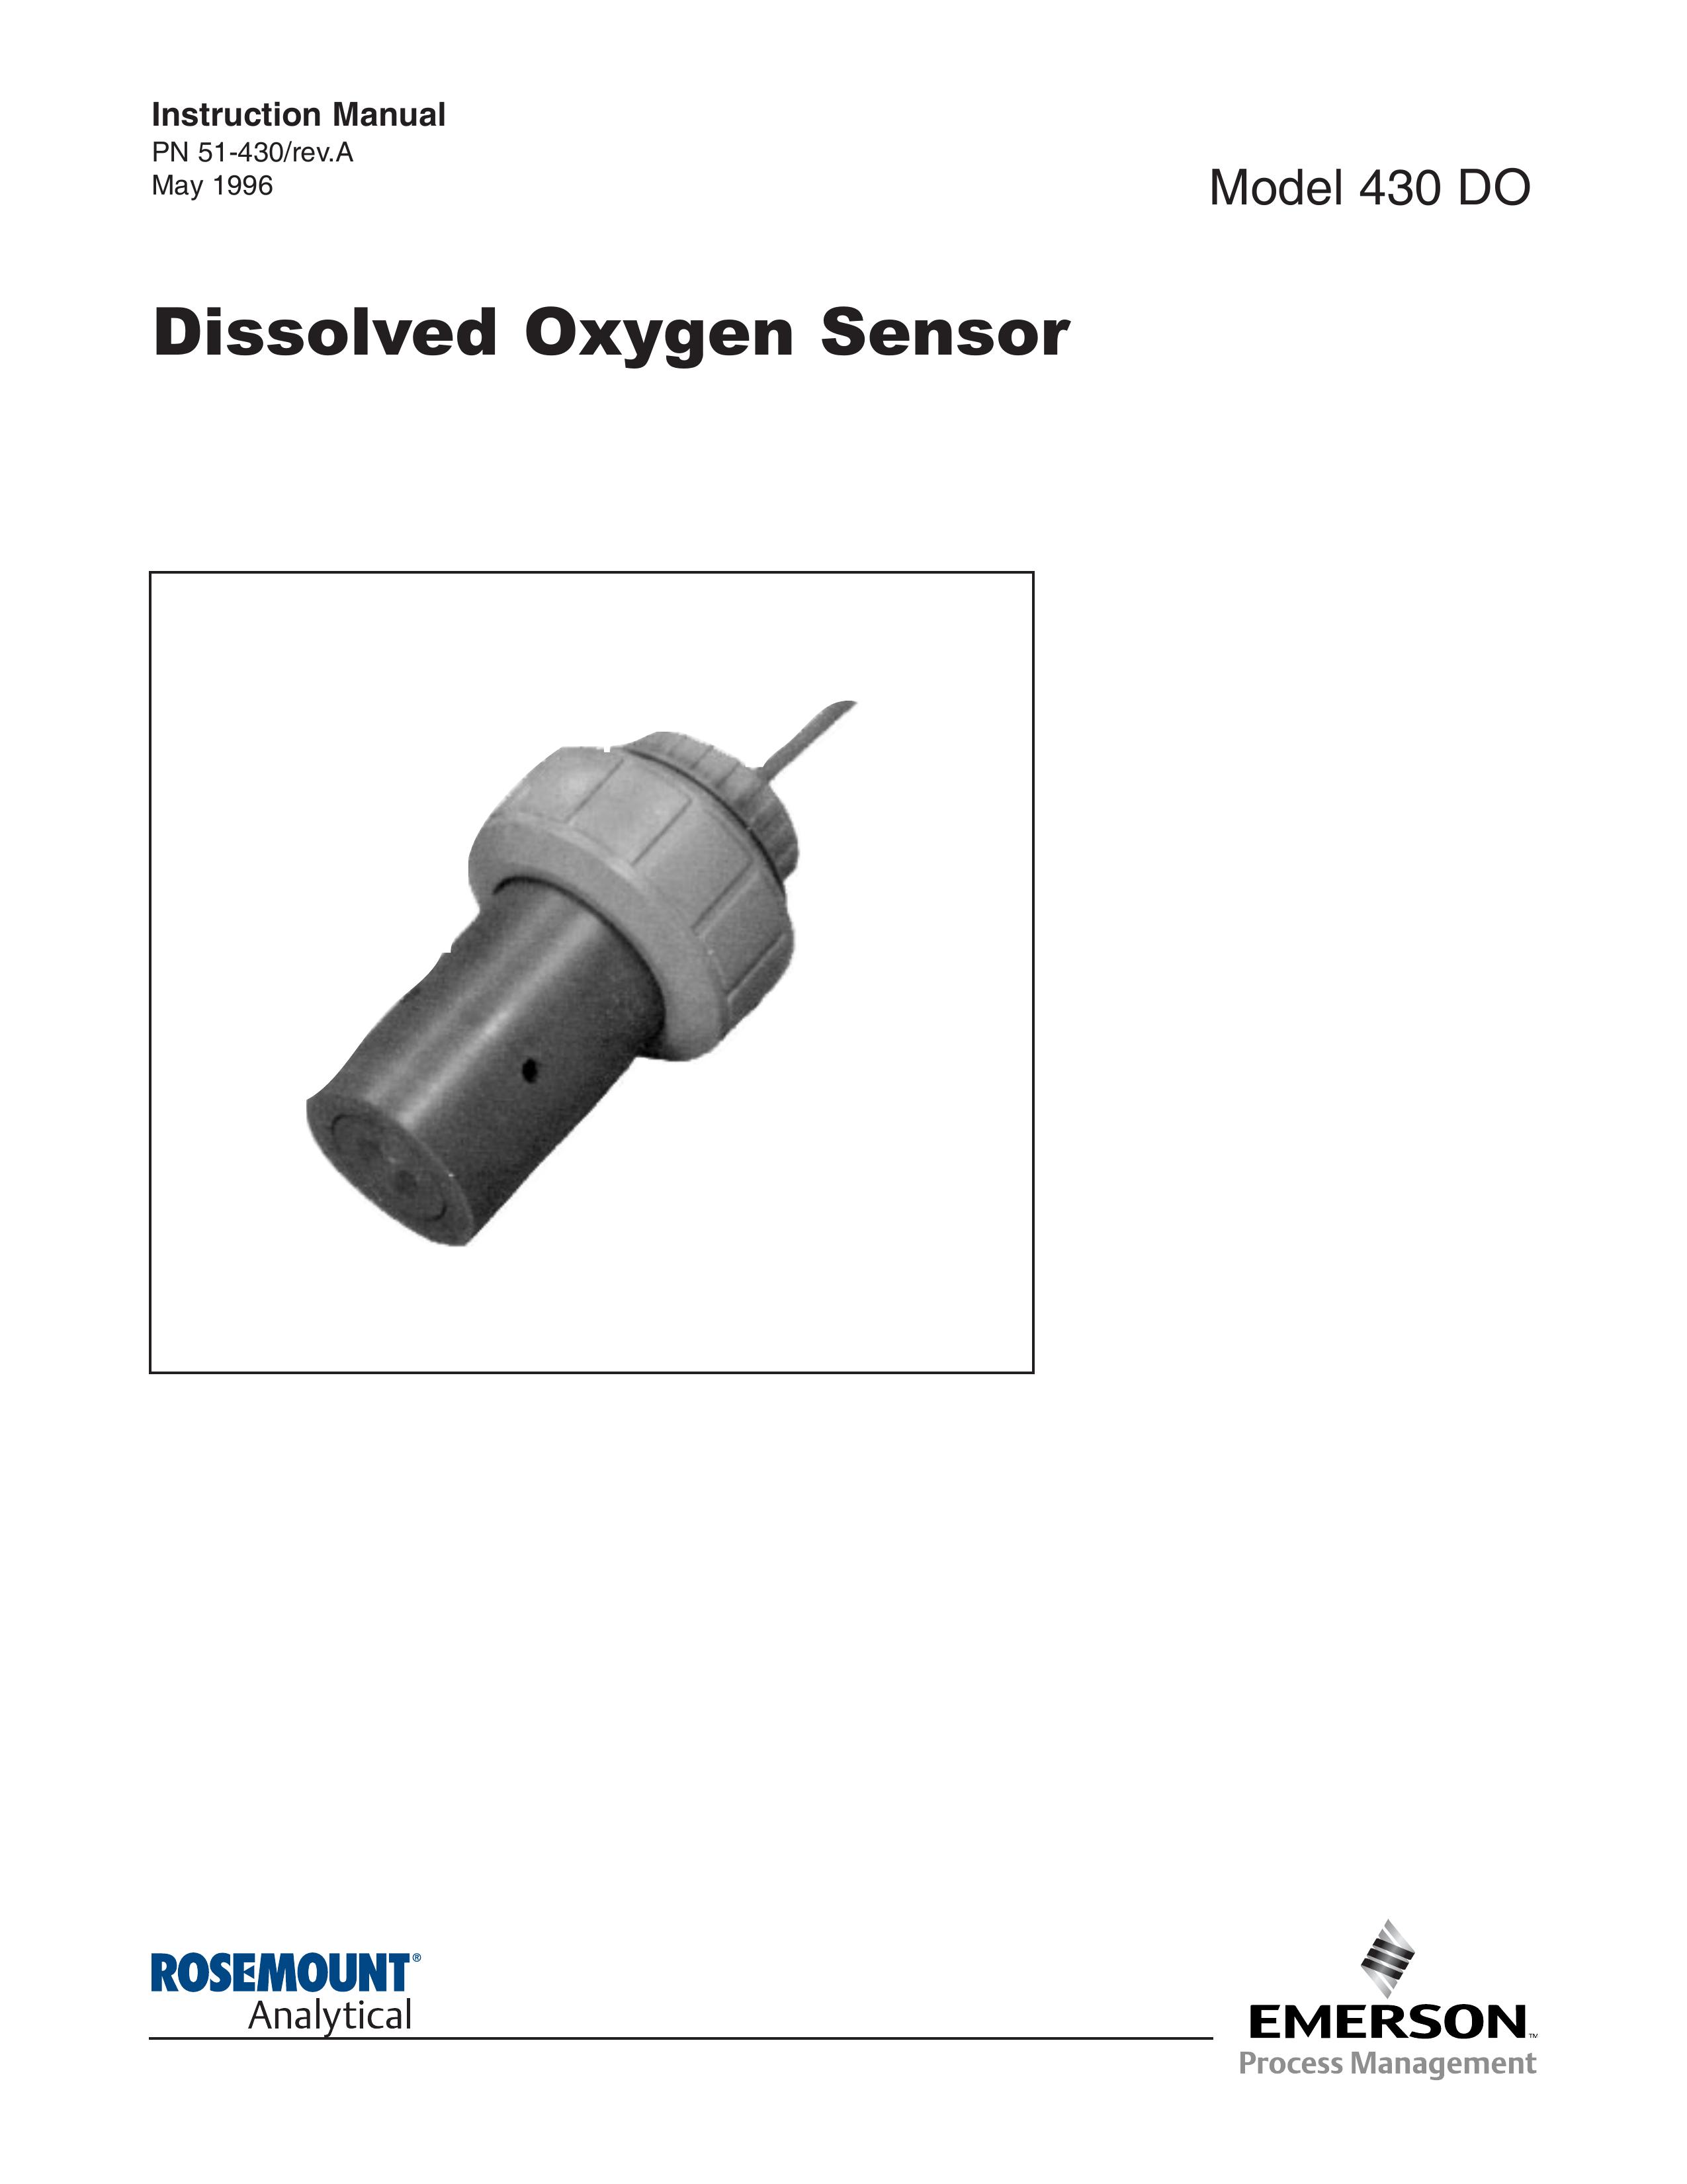 Emerson Process Management 430 DO Oxygen Equipment User Manual